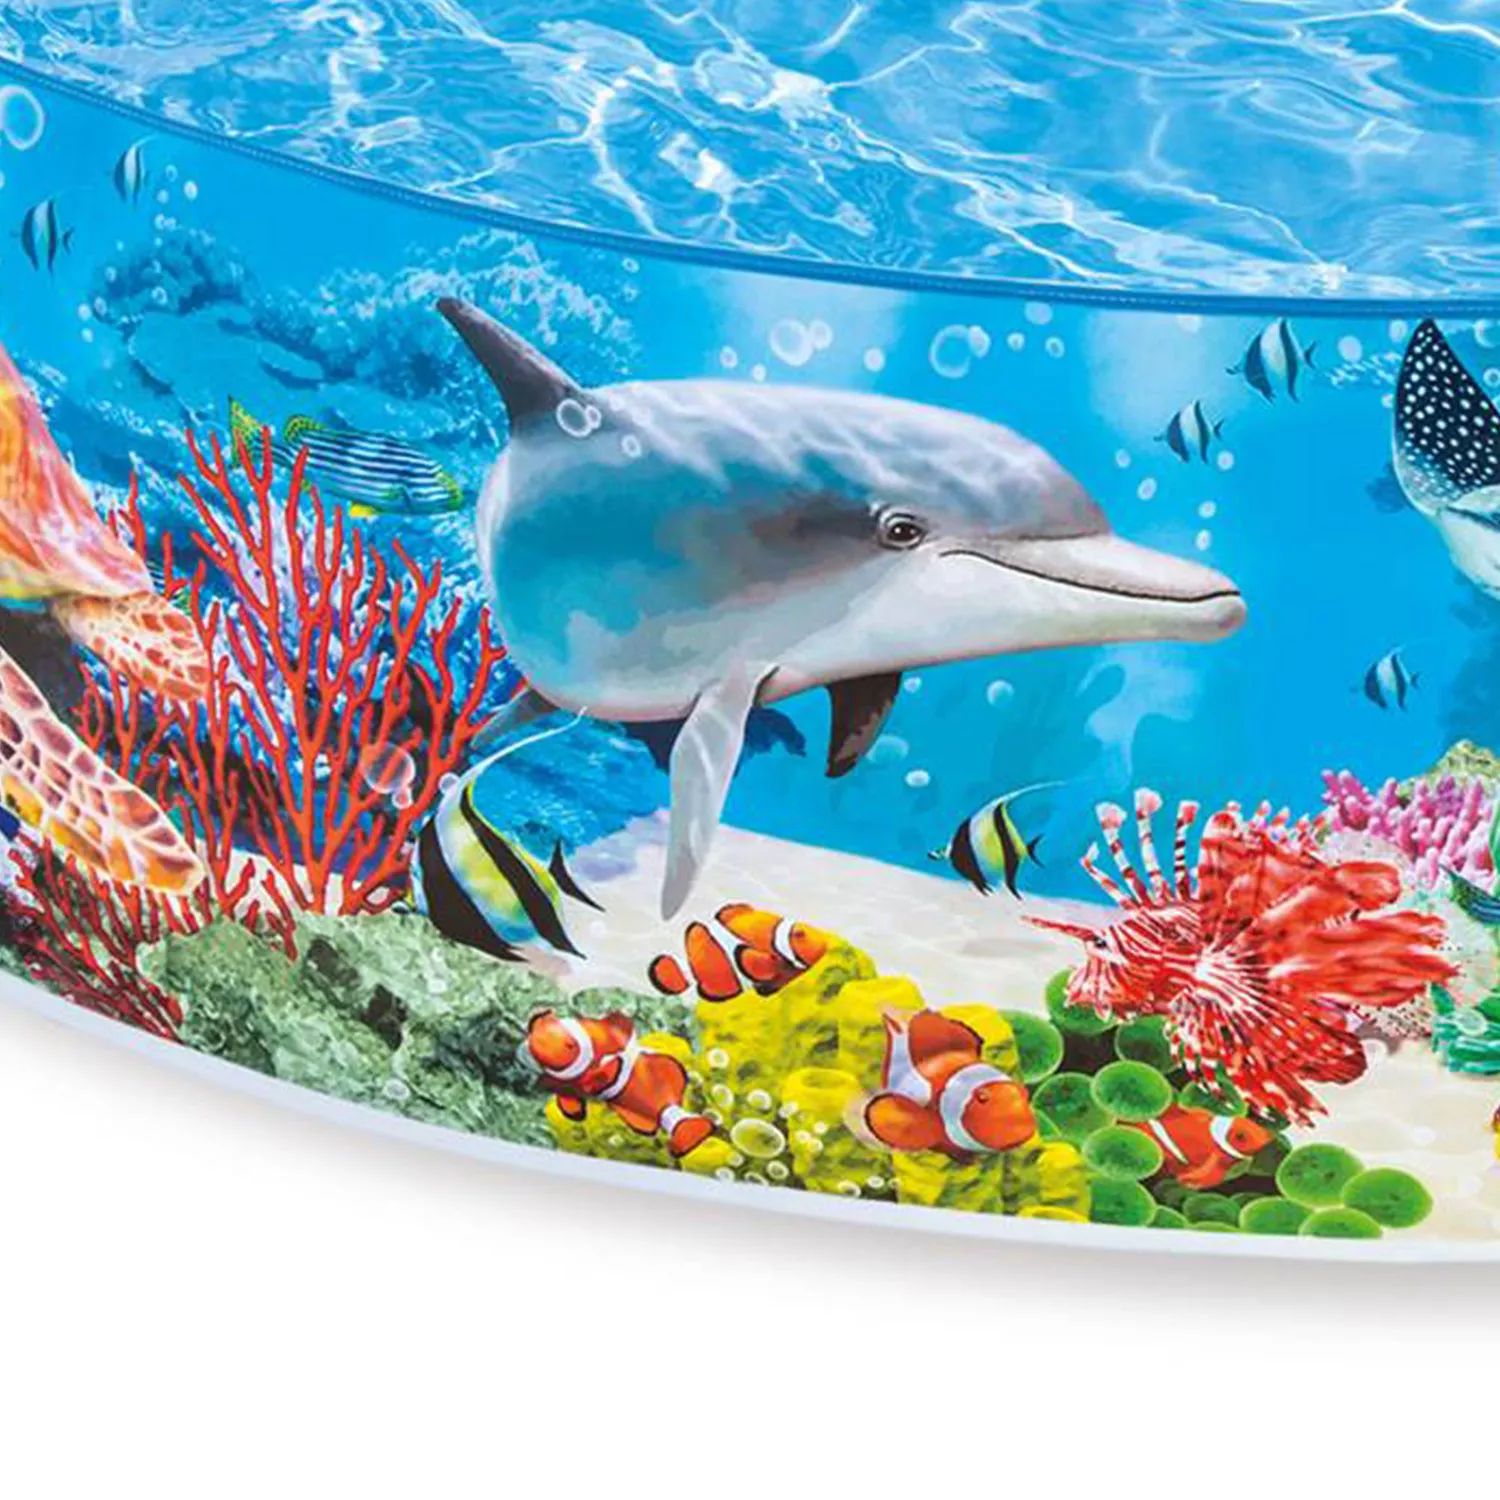 Intex Deep Sea Blue SnapSet Instant Надземный плавательный детский бассейн размером 8 футов x 18 дюймов Intex бассейн для детей intex 58472np deep blue sea snapset pool 244х46см 3